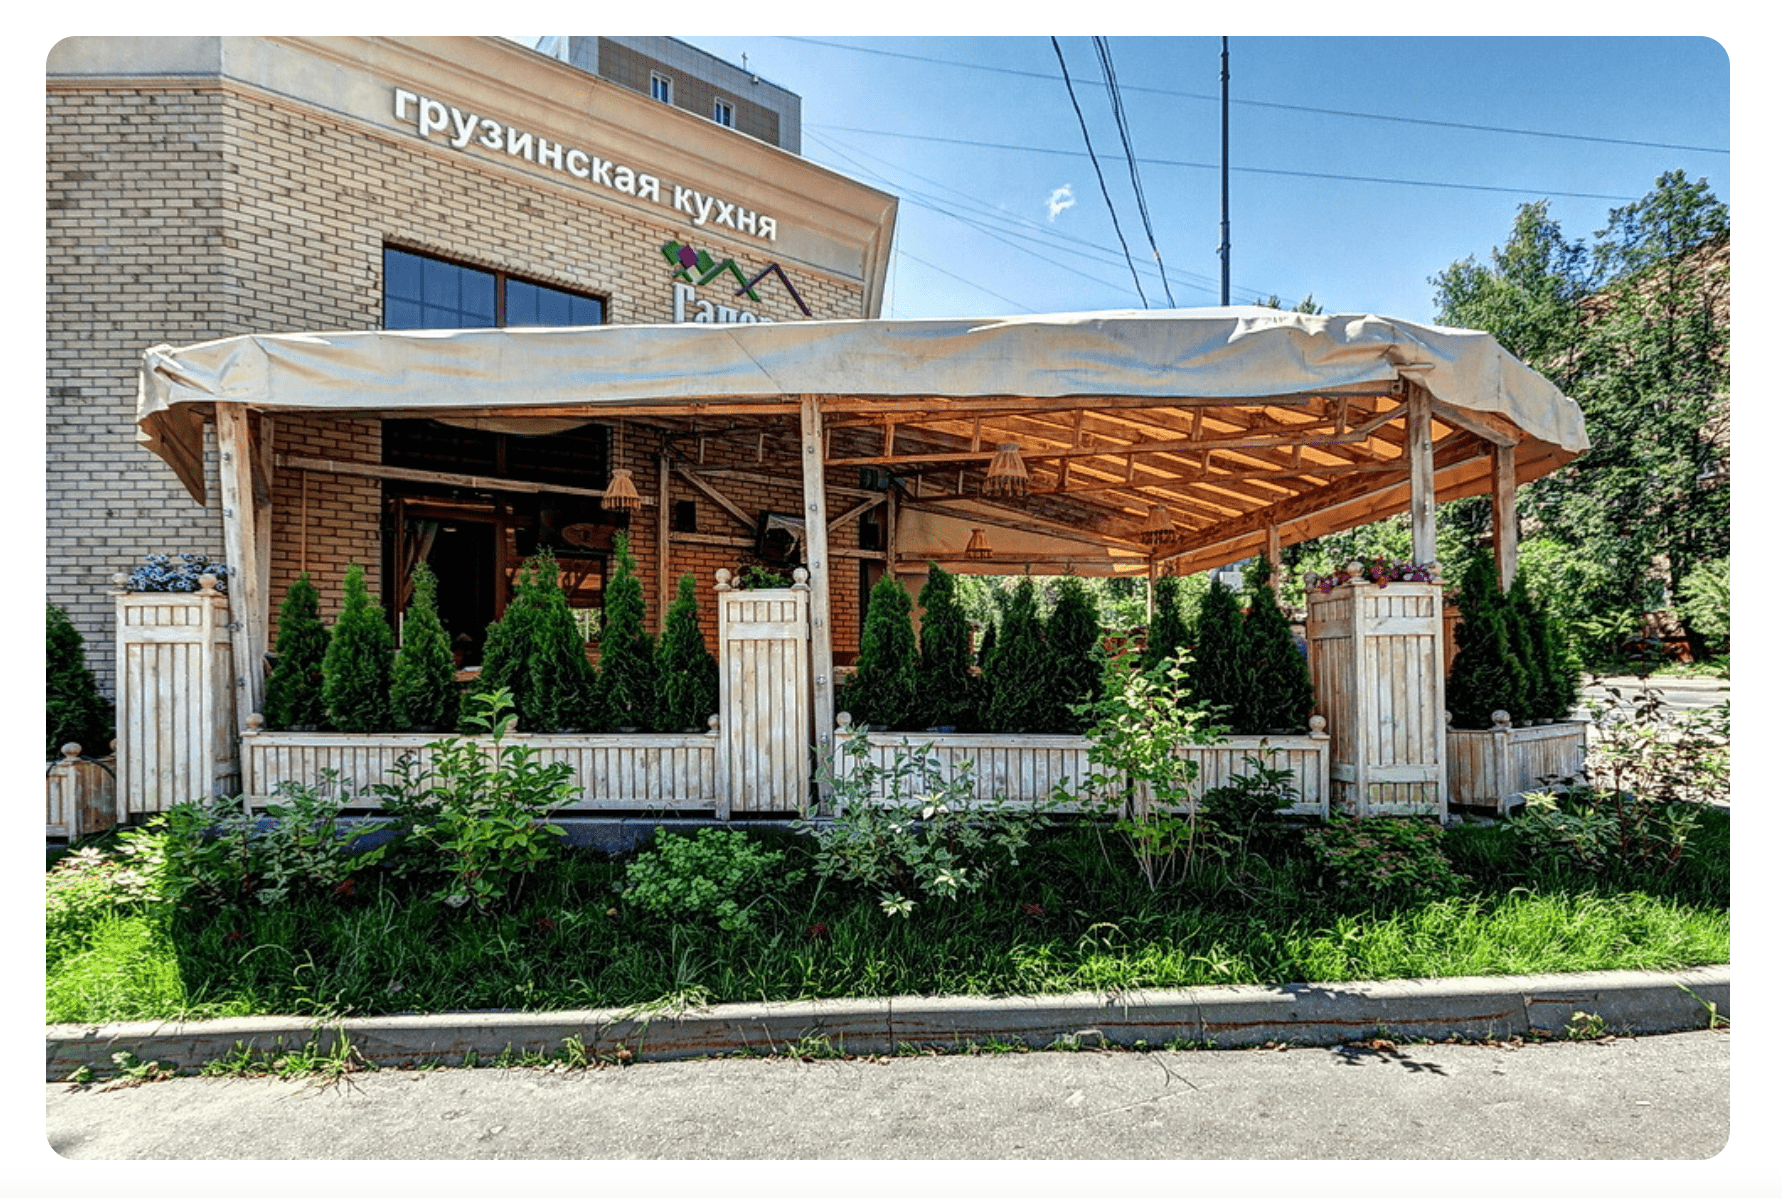 С грузинским акцентом ресторан Нагорная